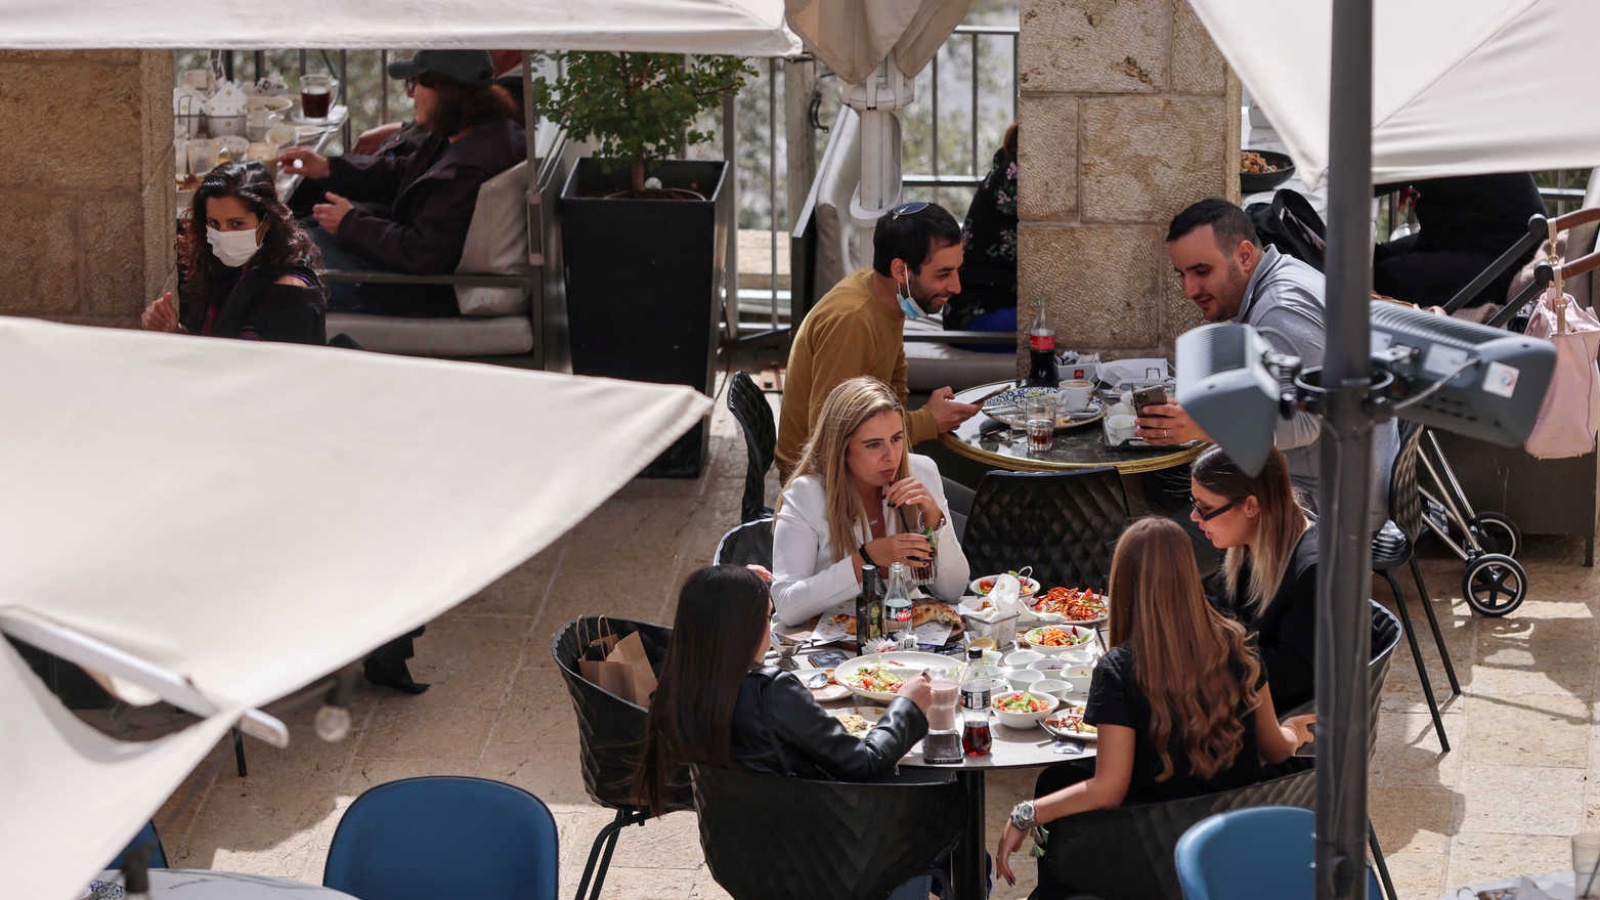 شباب إسرائيليون في مطعم في تل أبيب، بعدما حصلوا على التصريح الأخضر بتلقّيهم جرعة معزّزة من لقاح كورونا. (أرشيفية)